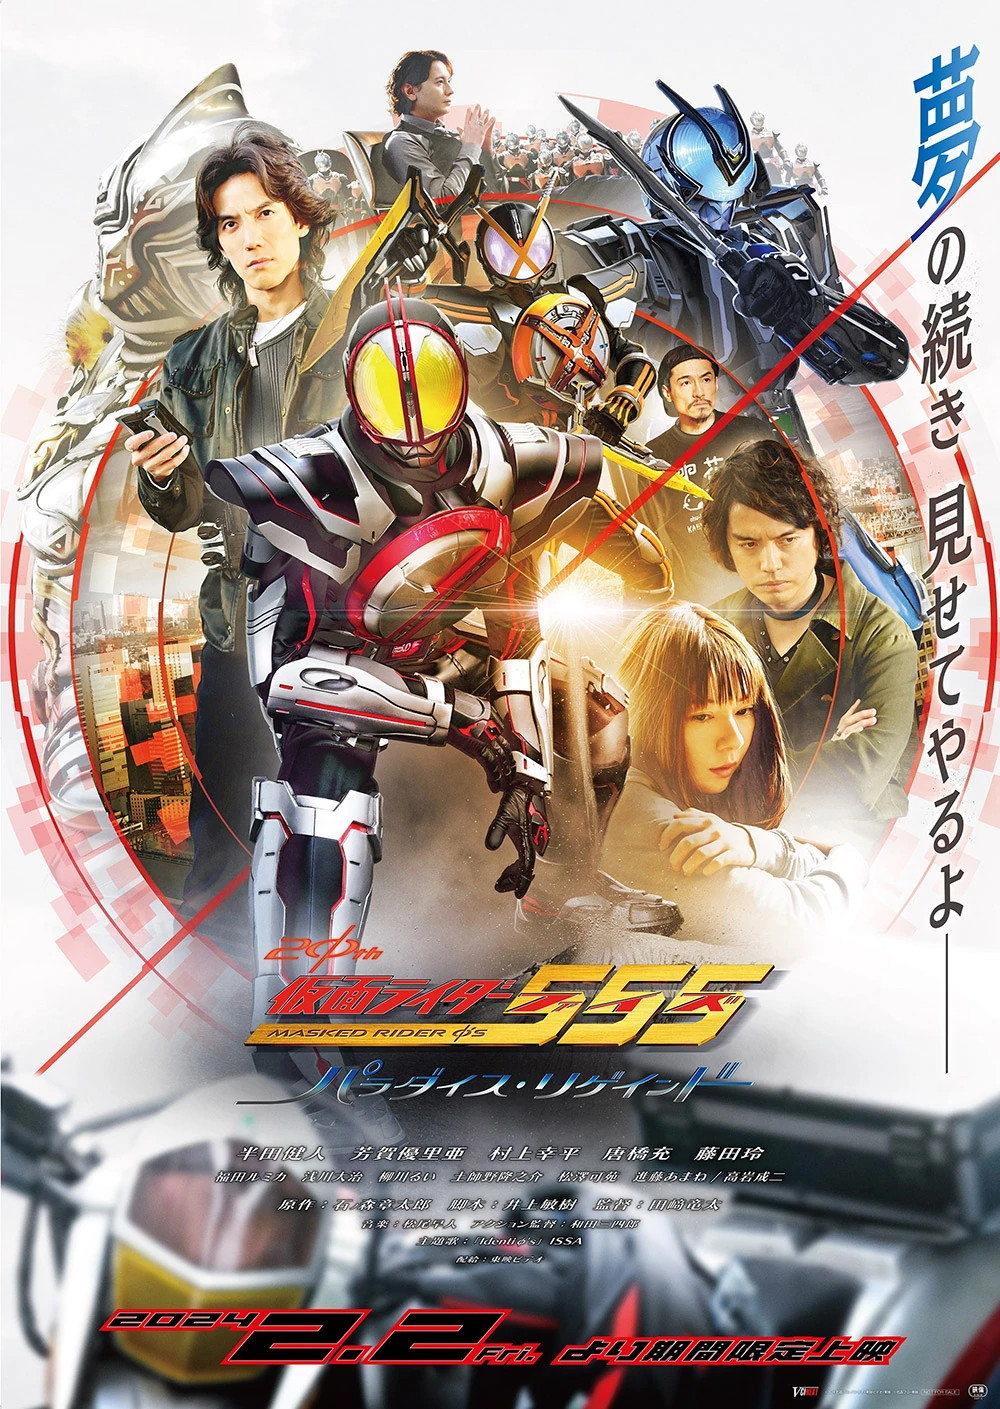 รีวิว Kamen Rider 555 20th: Paradise Regained ถ้า “คิดถึง” ก็คุ้มค่า แต่อย่าดูเอาจริงจังละ …